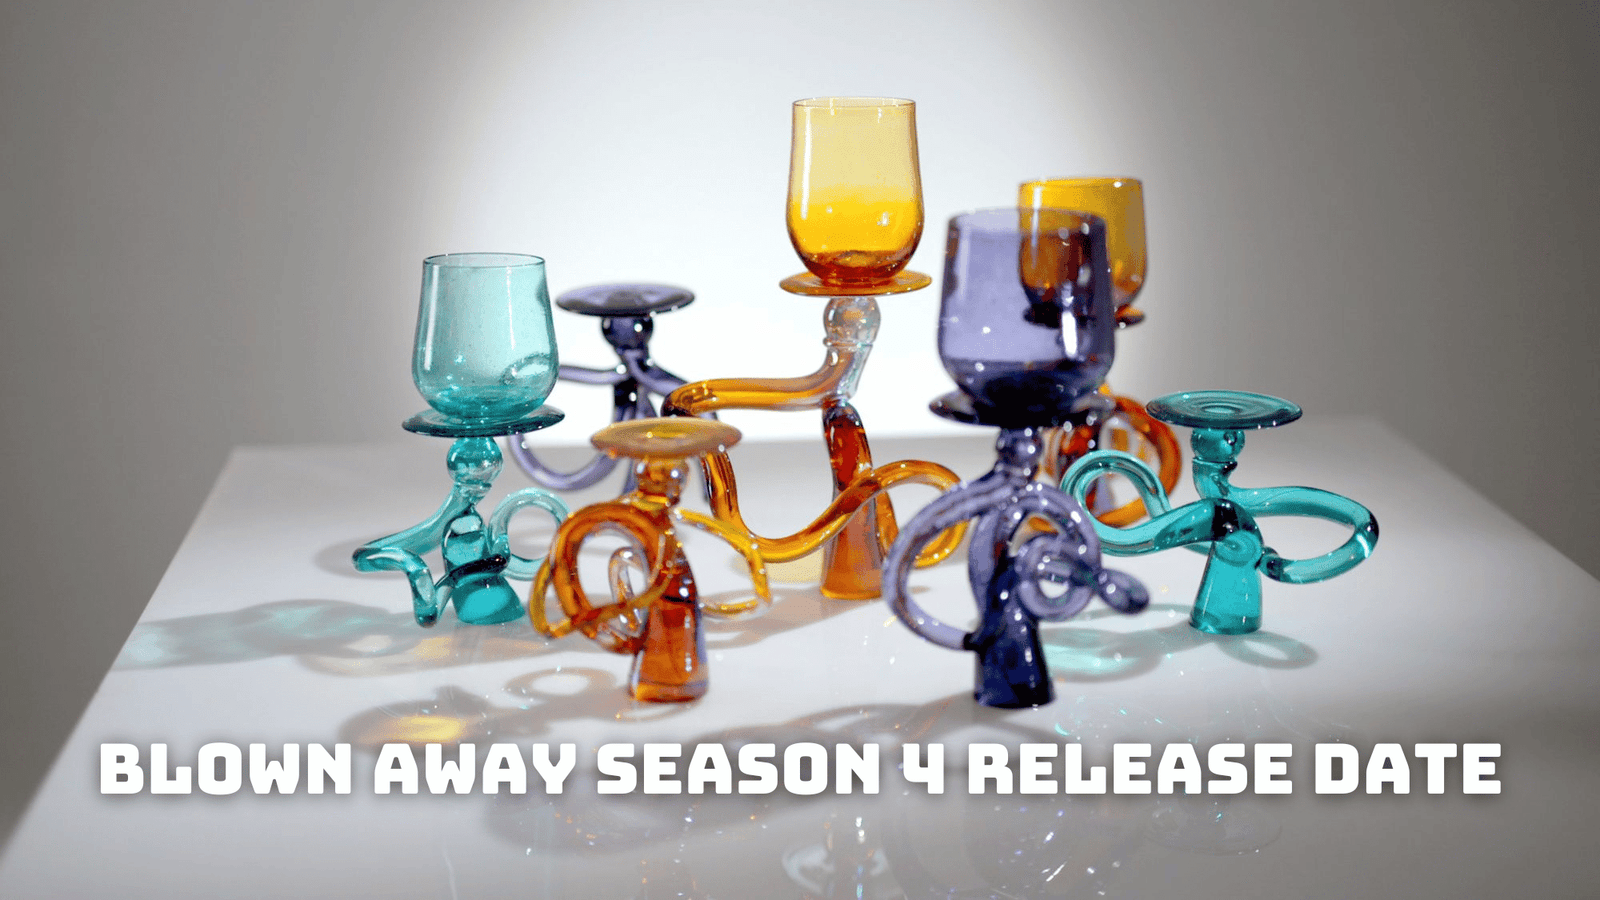 Blown Away Season 4 Release Date, Trailer